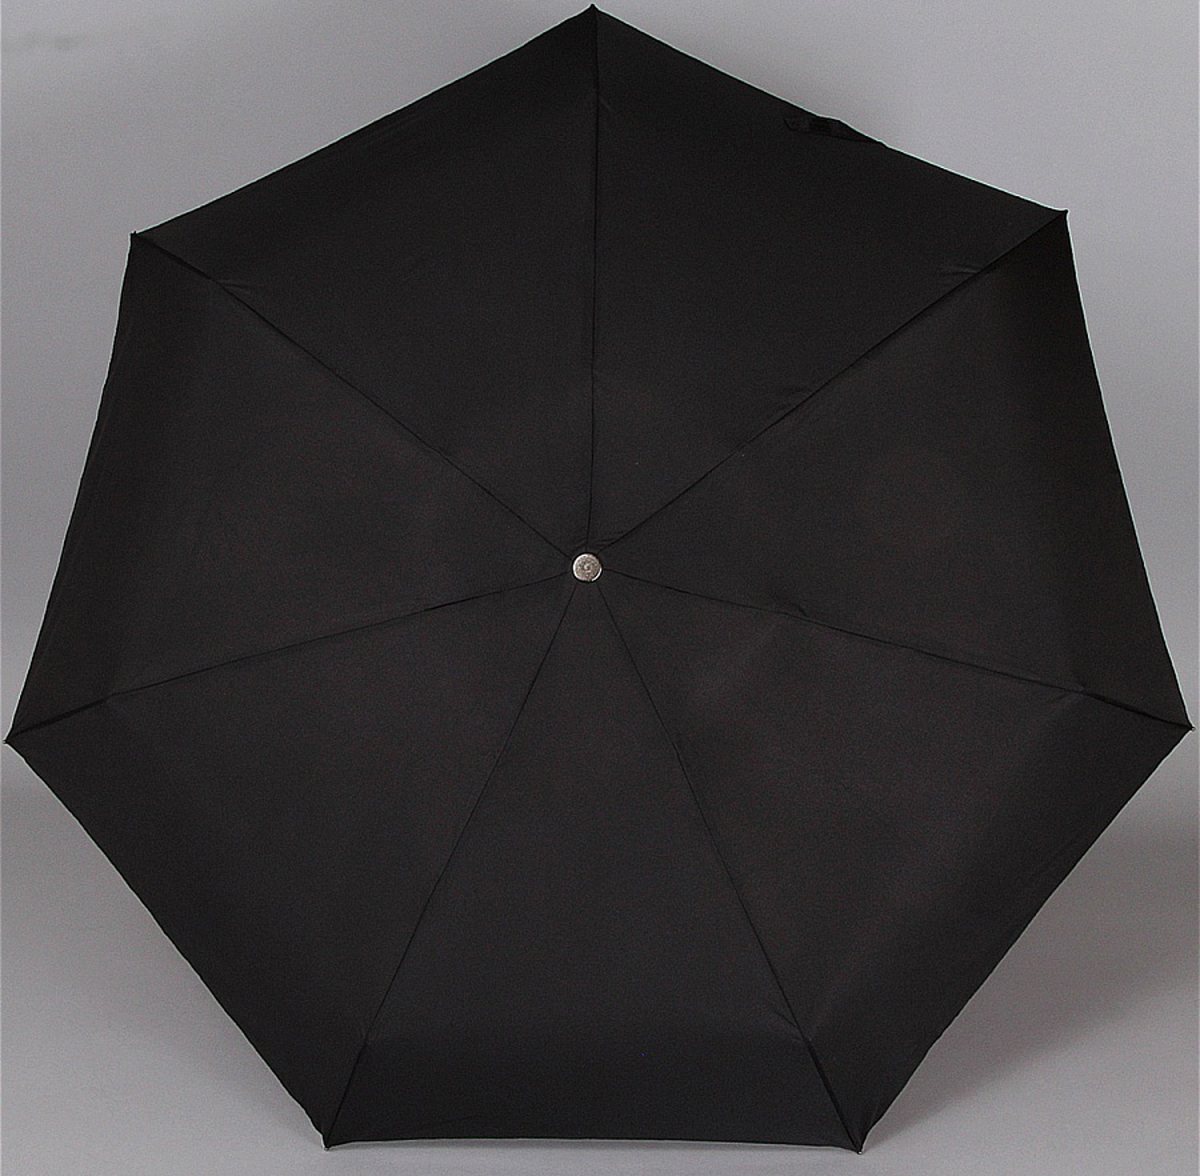 Зонт мужской Trust, автомат, 4 сложения, цвет: черный. 42370